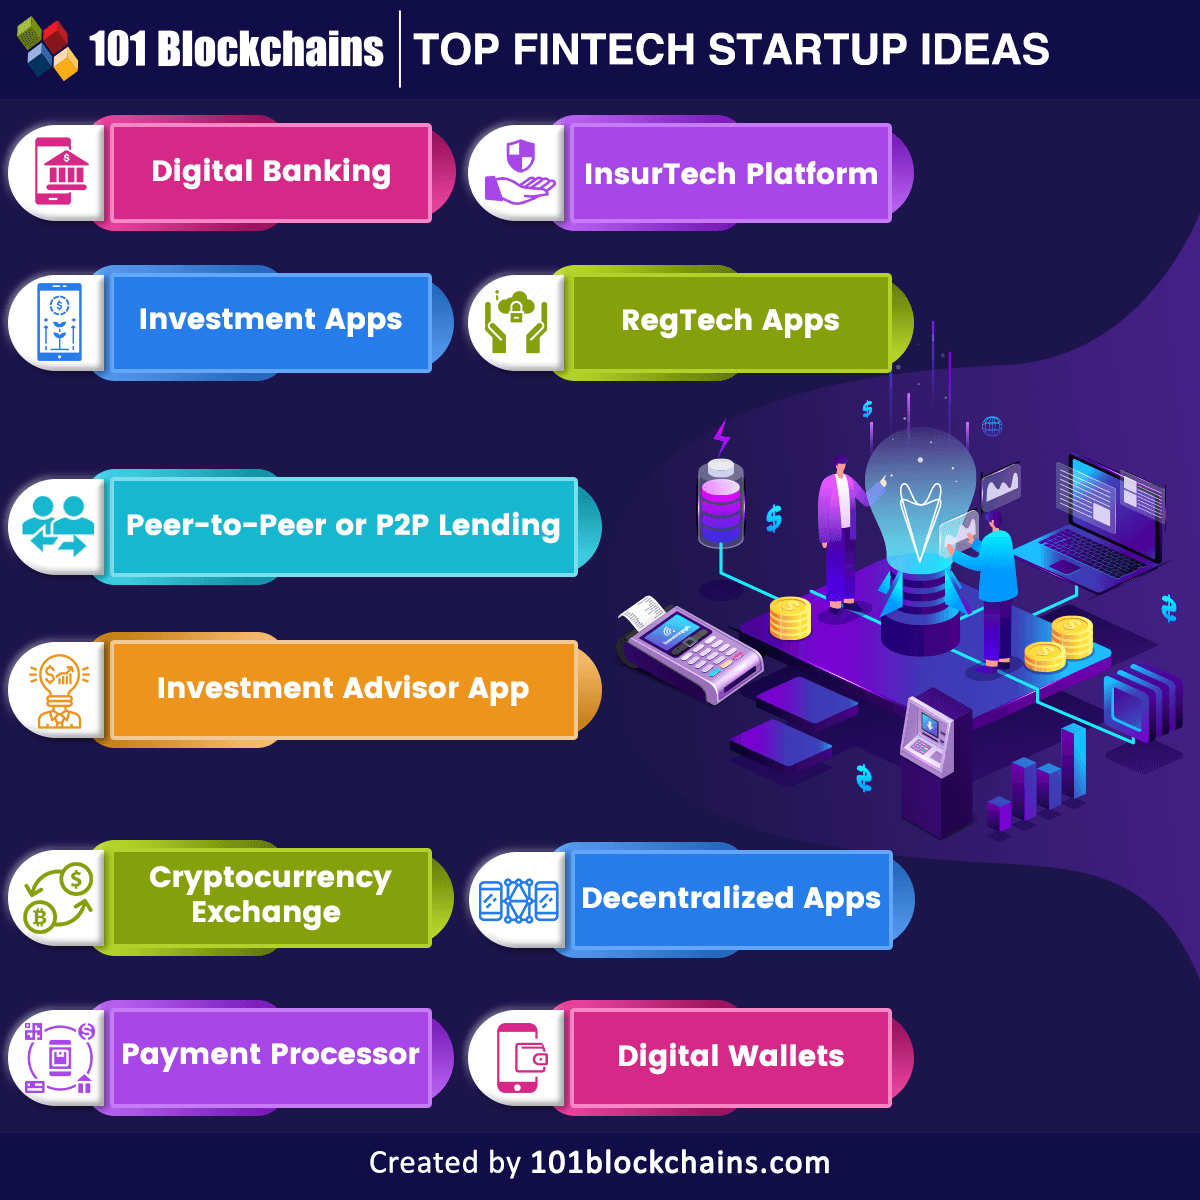 Top Fintech Startup Ideas